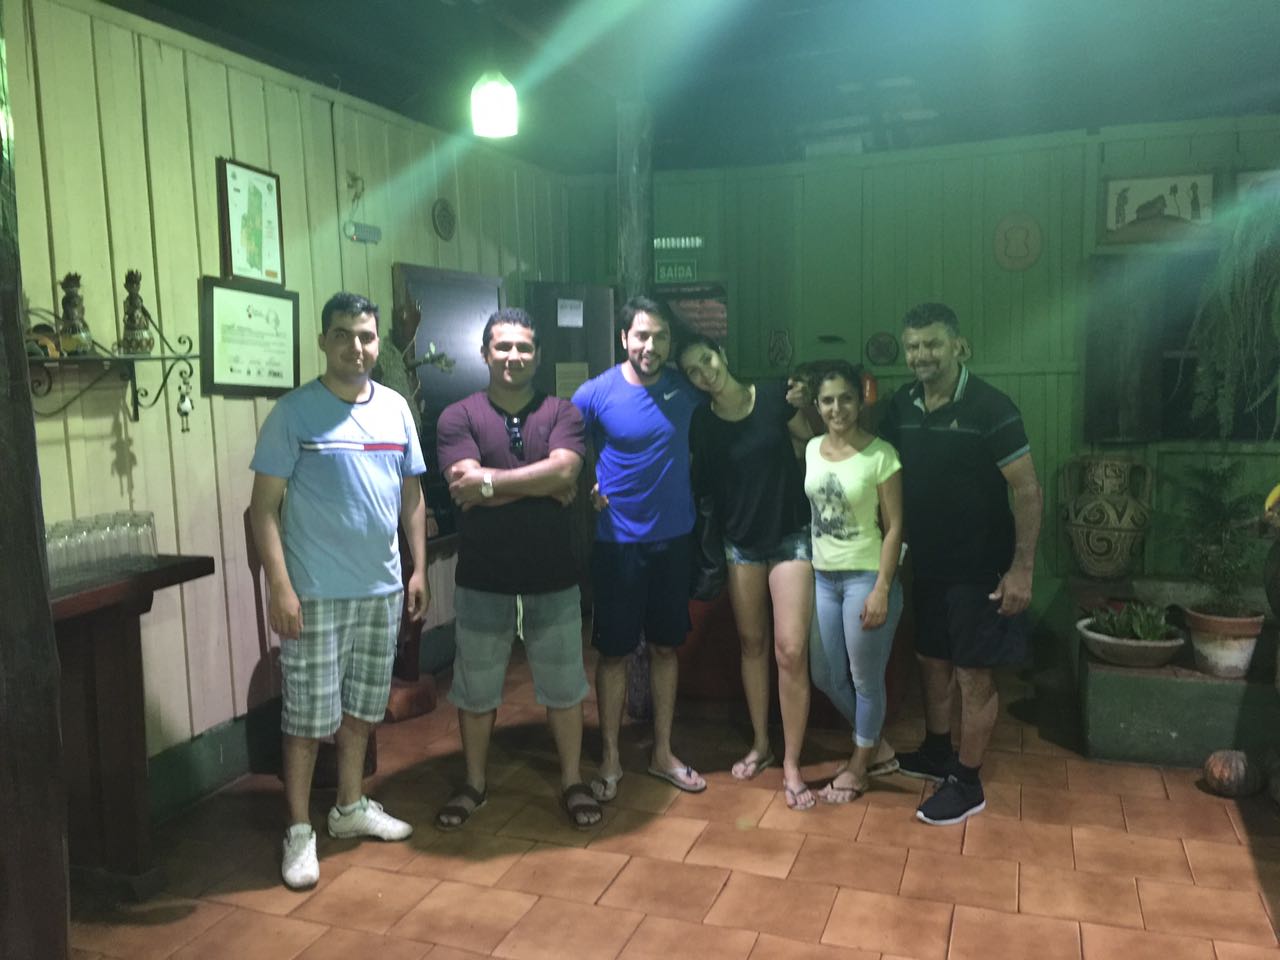 Equipe da Missão Técnica de Pirenópolis visita a Estância Mimosa